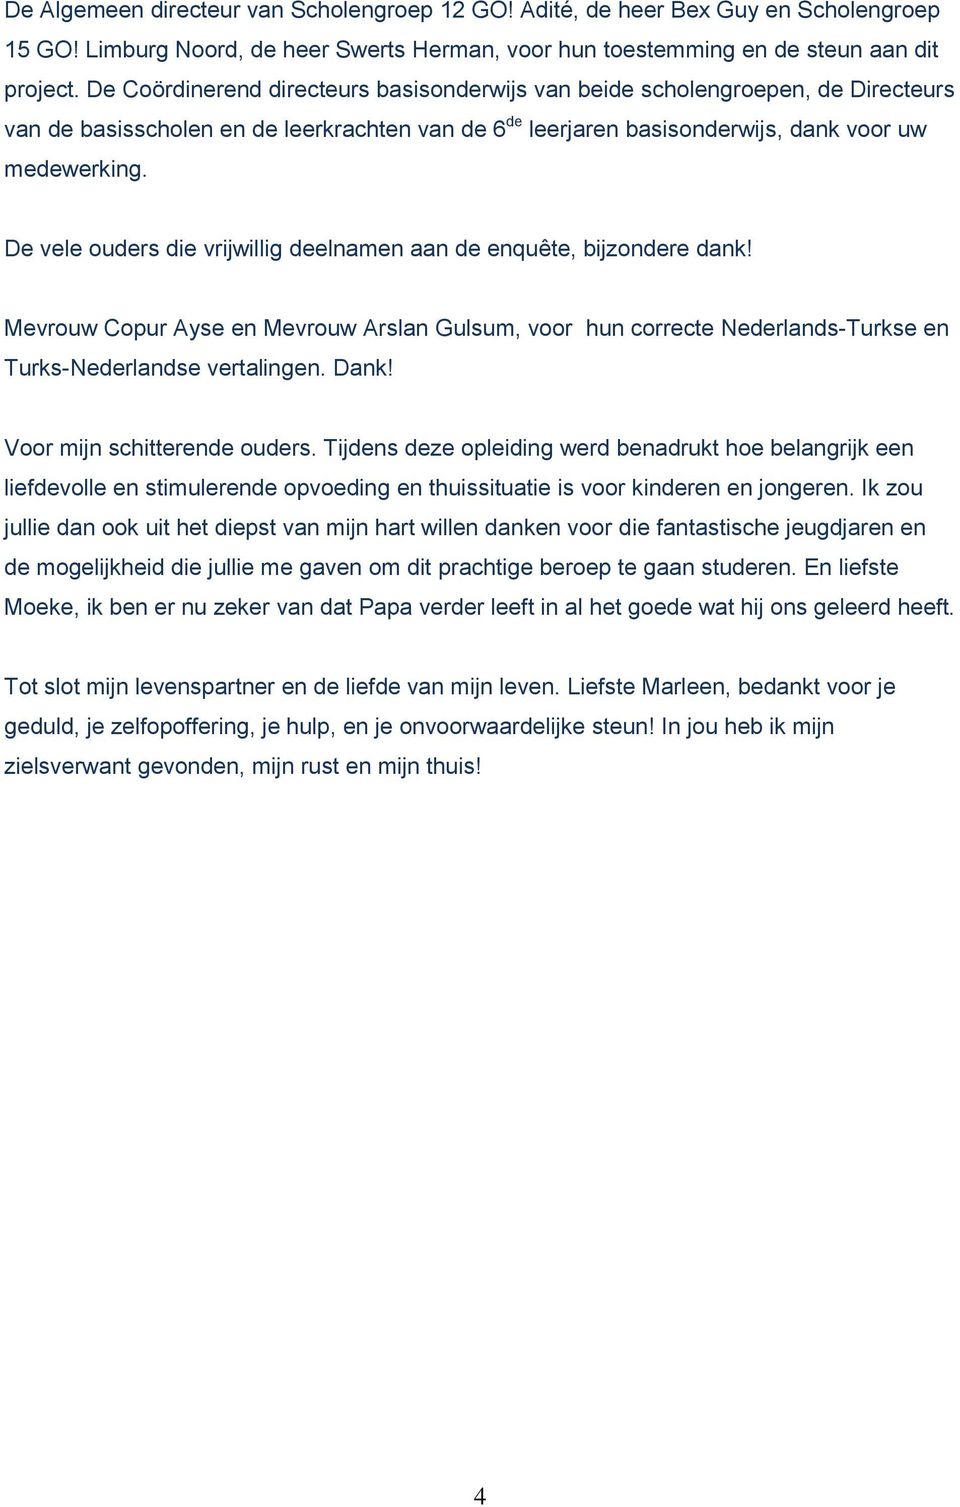 De vele ouders die vrijwillig deelnamen aan de enquête, bijzondere dank! Mevrouw Copur Ayse en Mevrouw Arslan Gulsum, voor hun correcte Nederlands-Turkse en Turks-Nederlandse vertalingen. Dank!